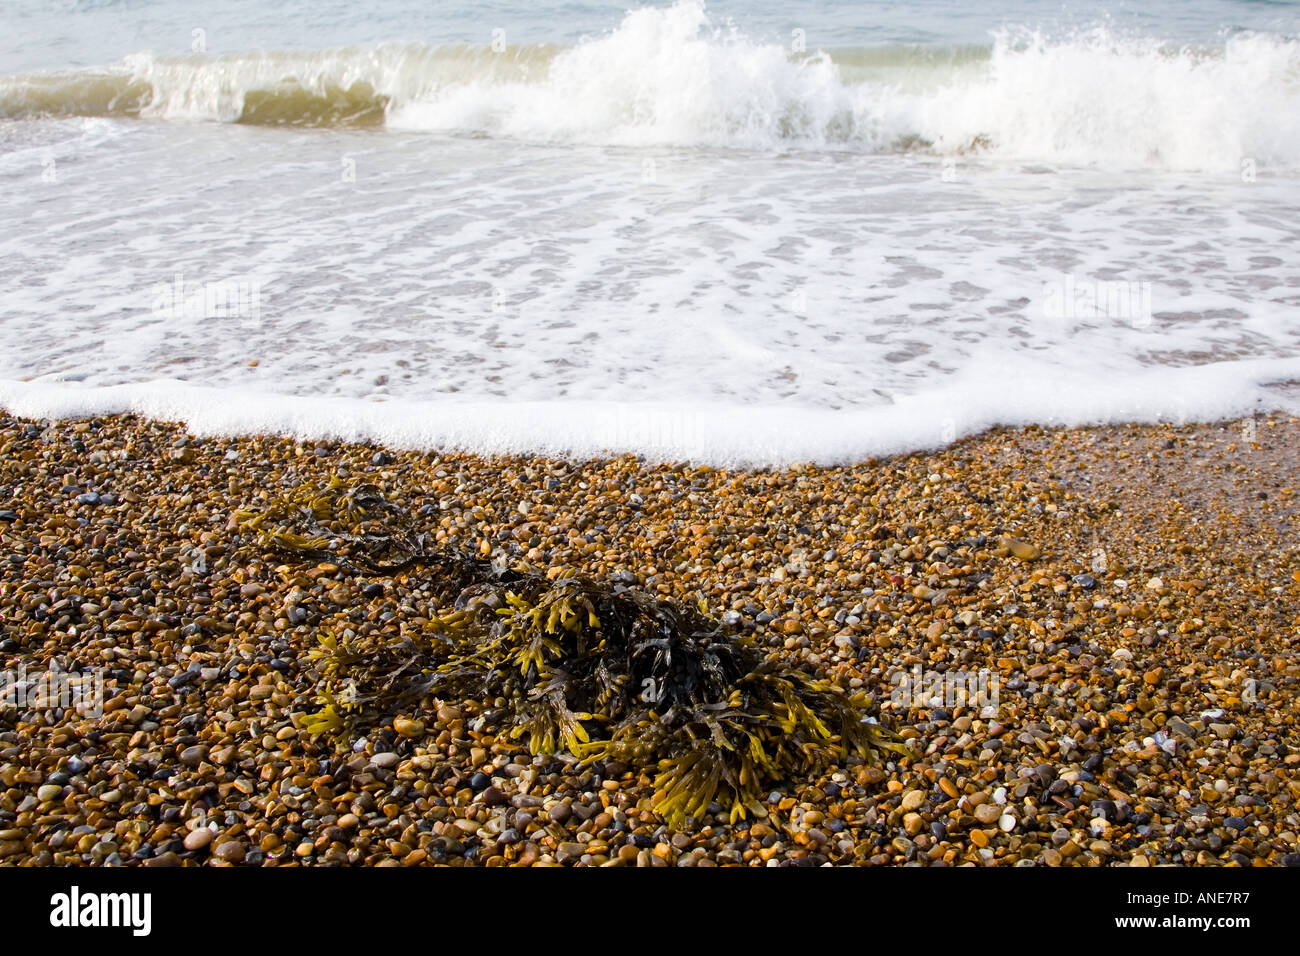 Seegras angespült Cley Beach North Norfolk Küste Vereinigtes Königreich Stockfoto